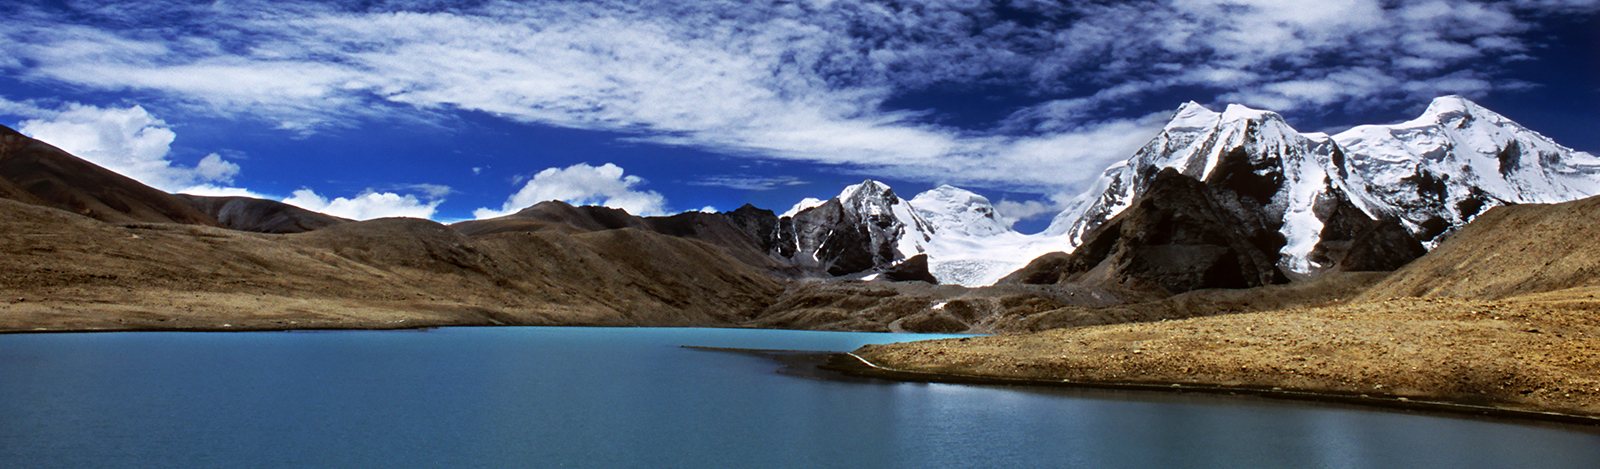 Himalayan Tour of India